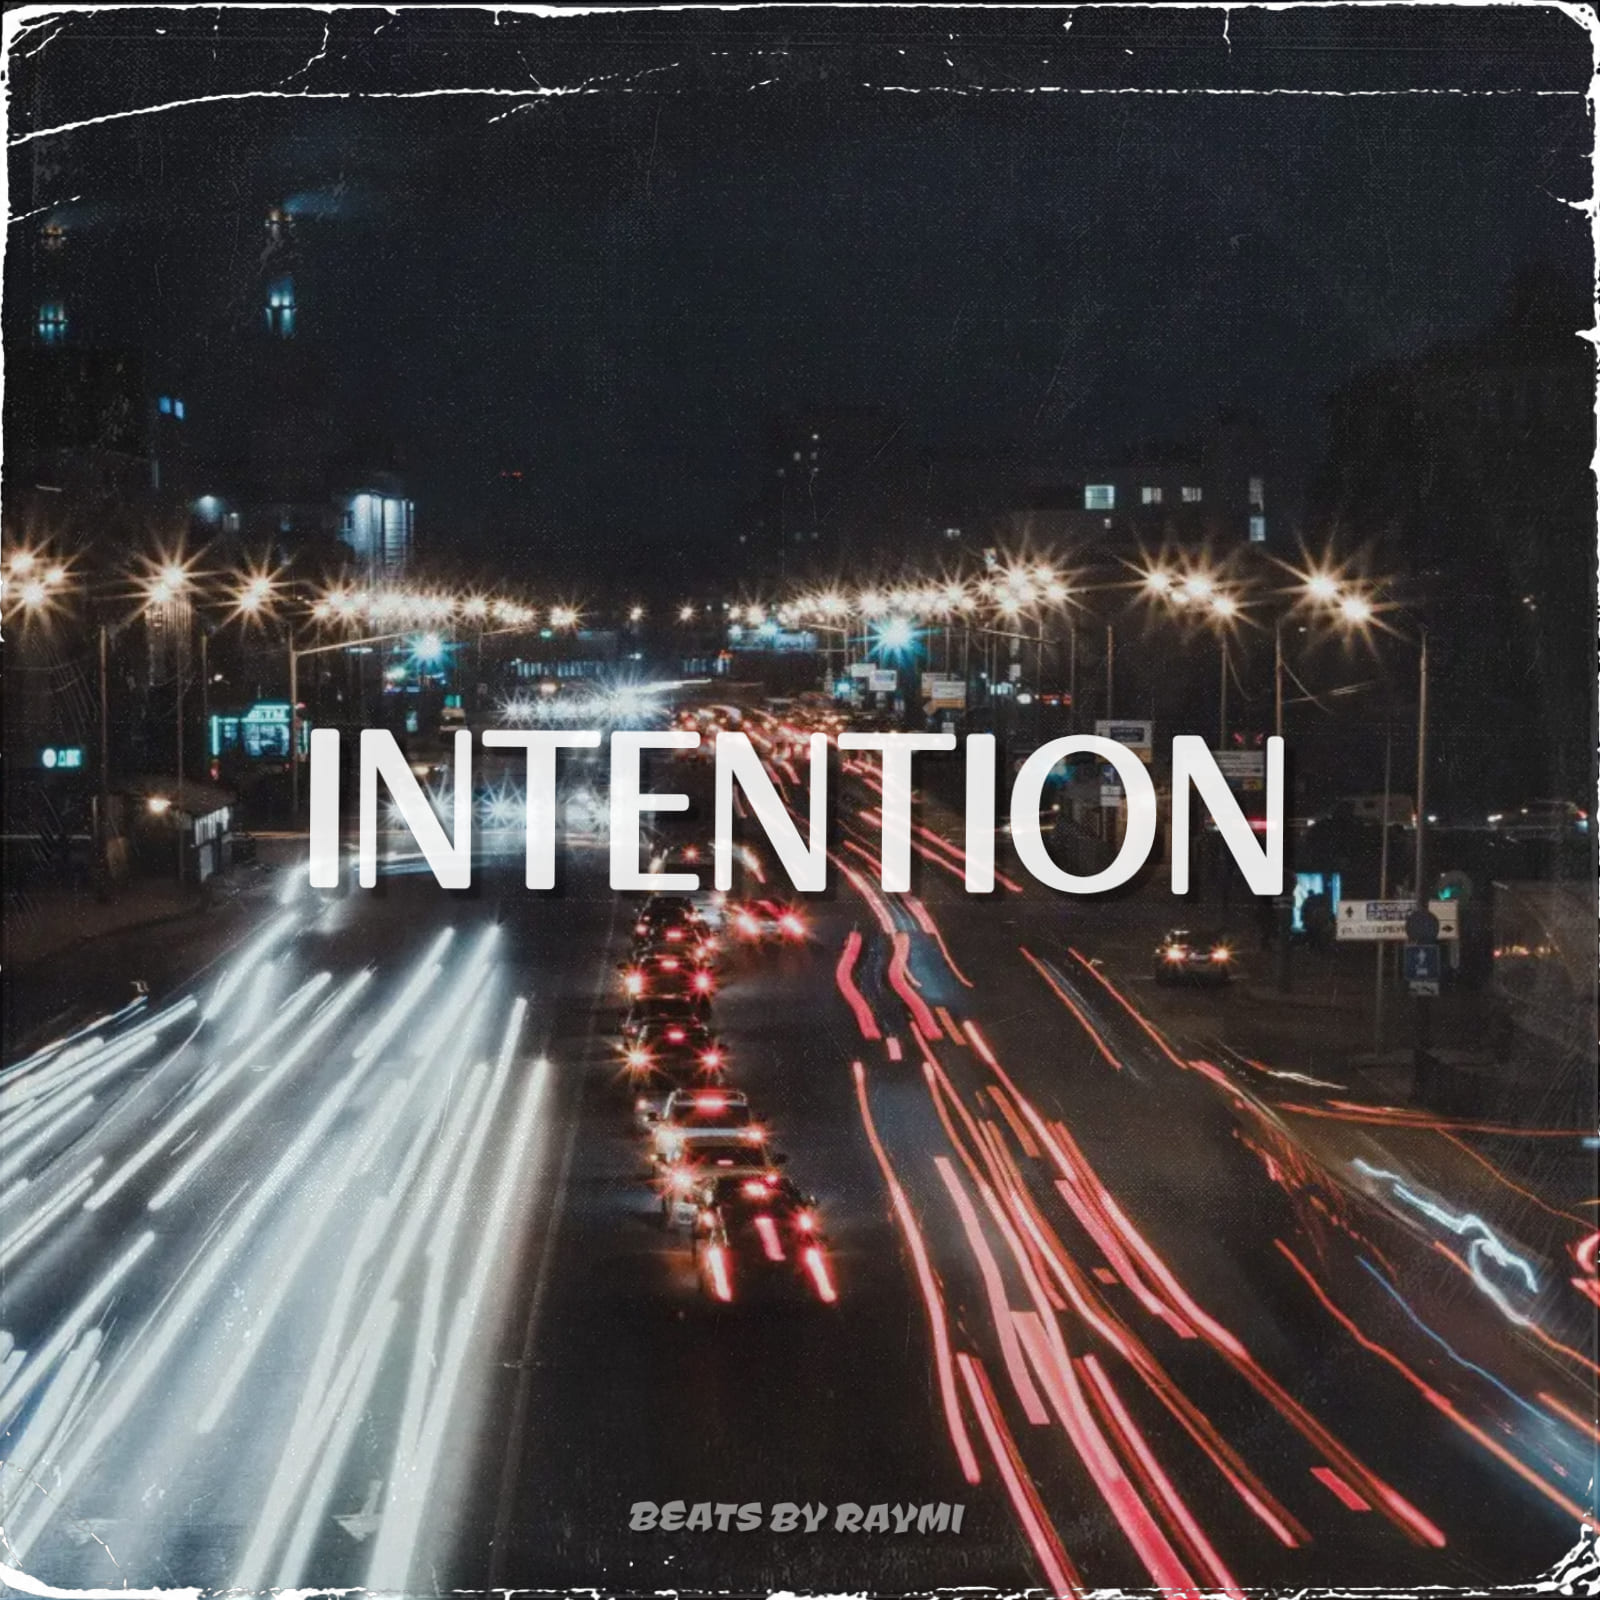 обложка бита, Raymi, музыка, cover, Intention (зажигательный, энергичный house бит)